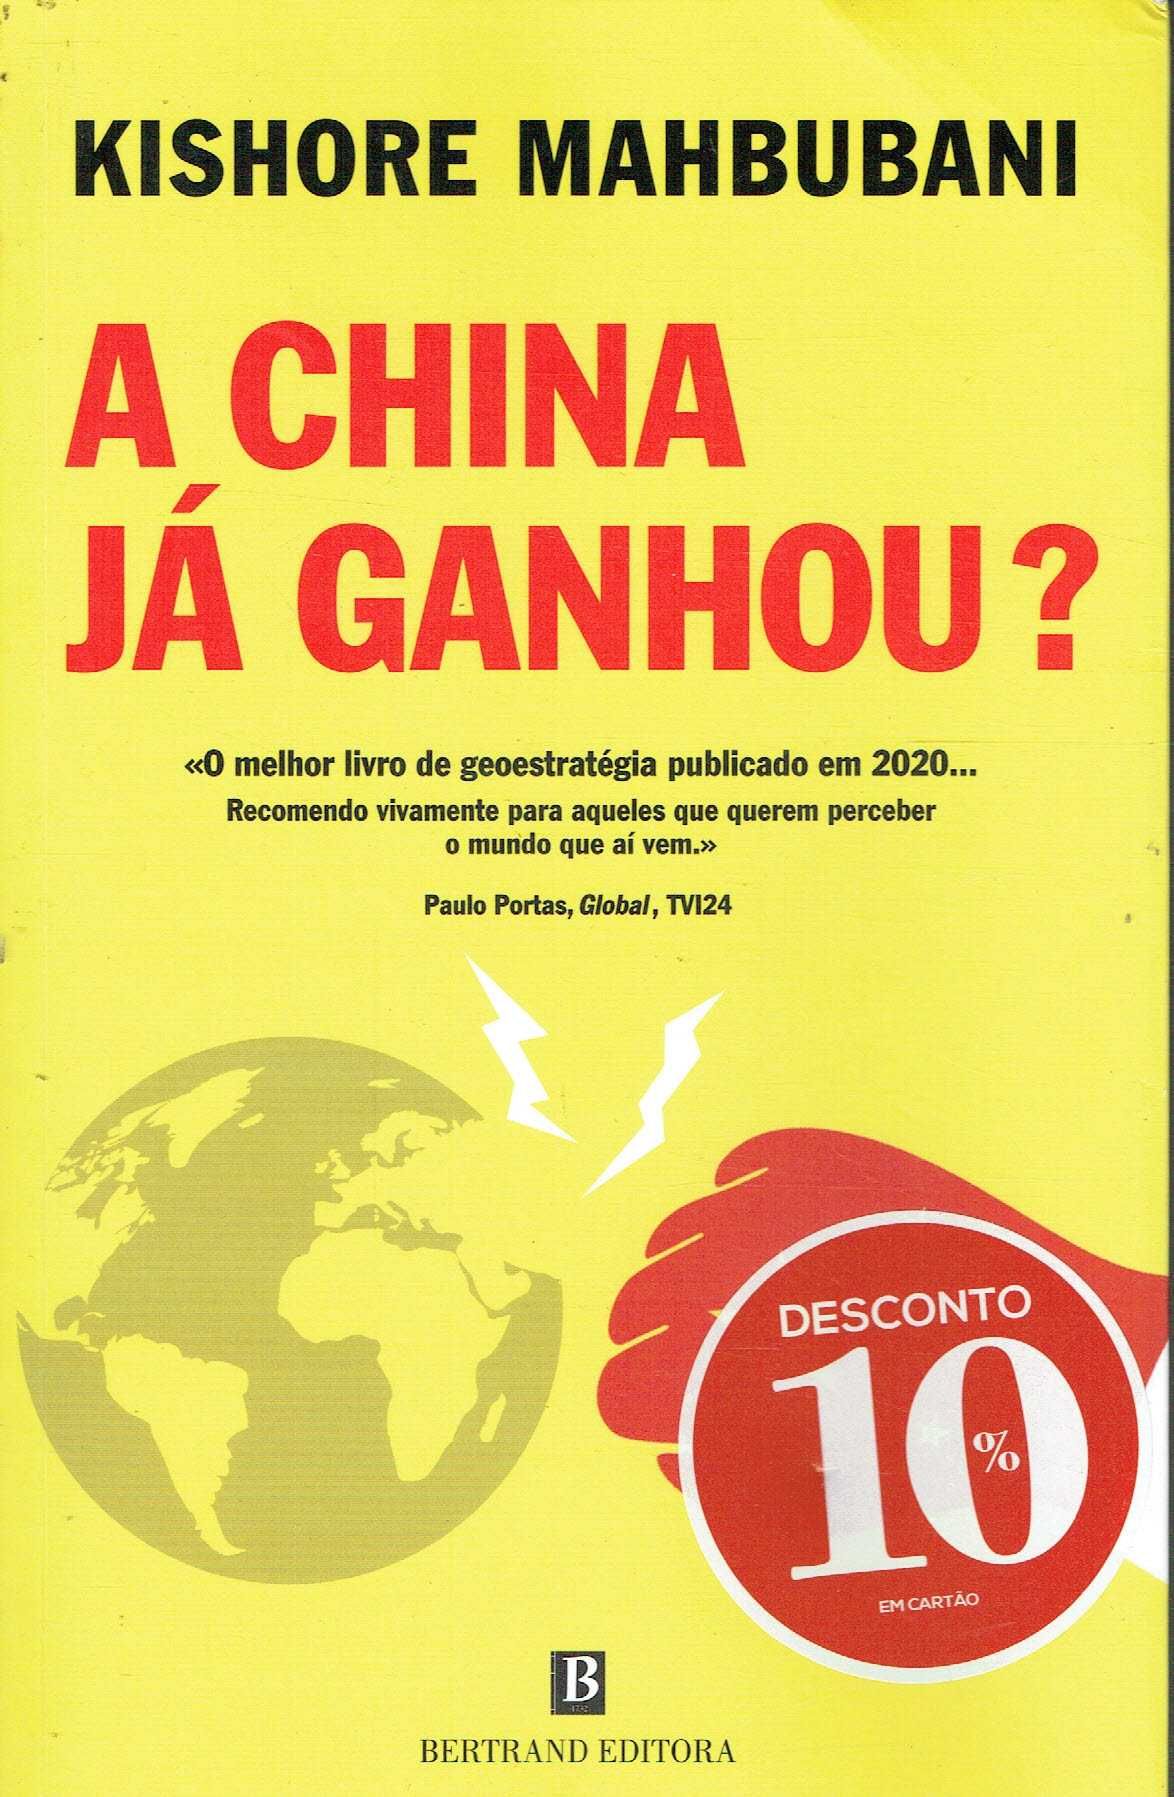 14781

A China já Ganhou?
de Kishore Mahbubani